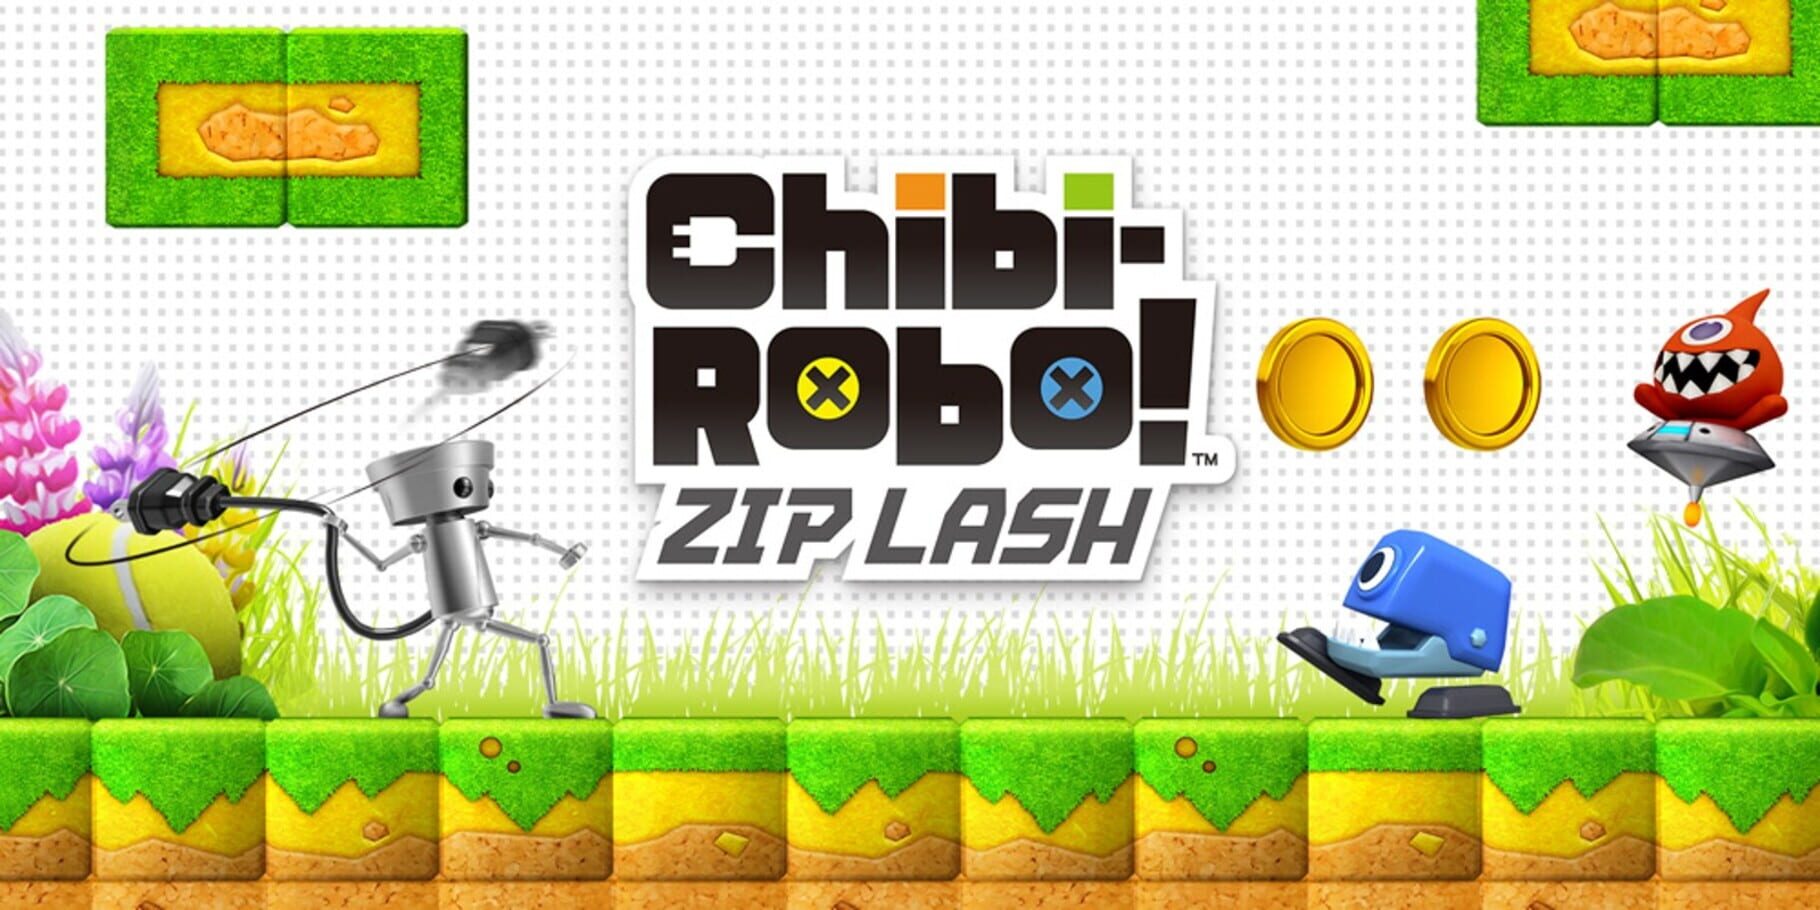 Artwork for Chibi-Robo! Zip Lash